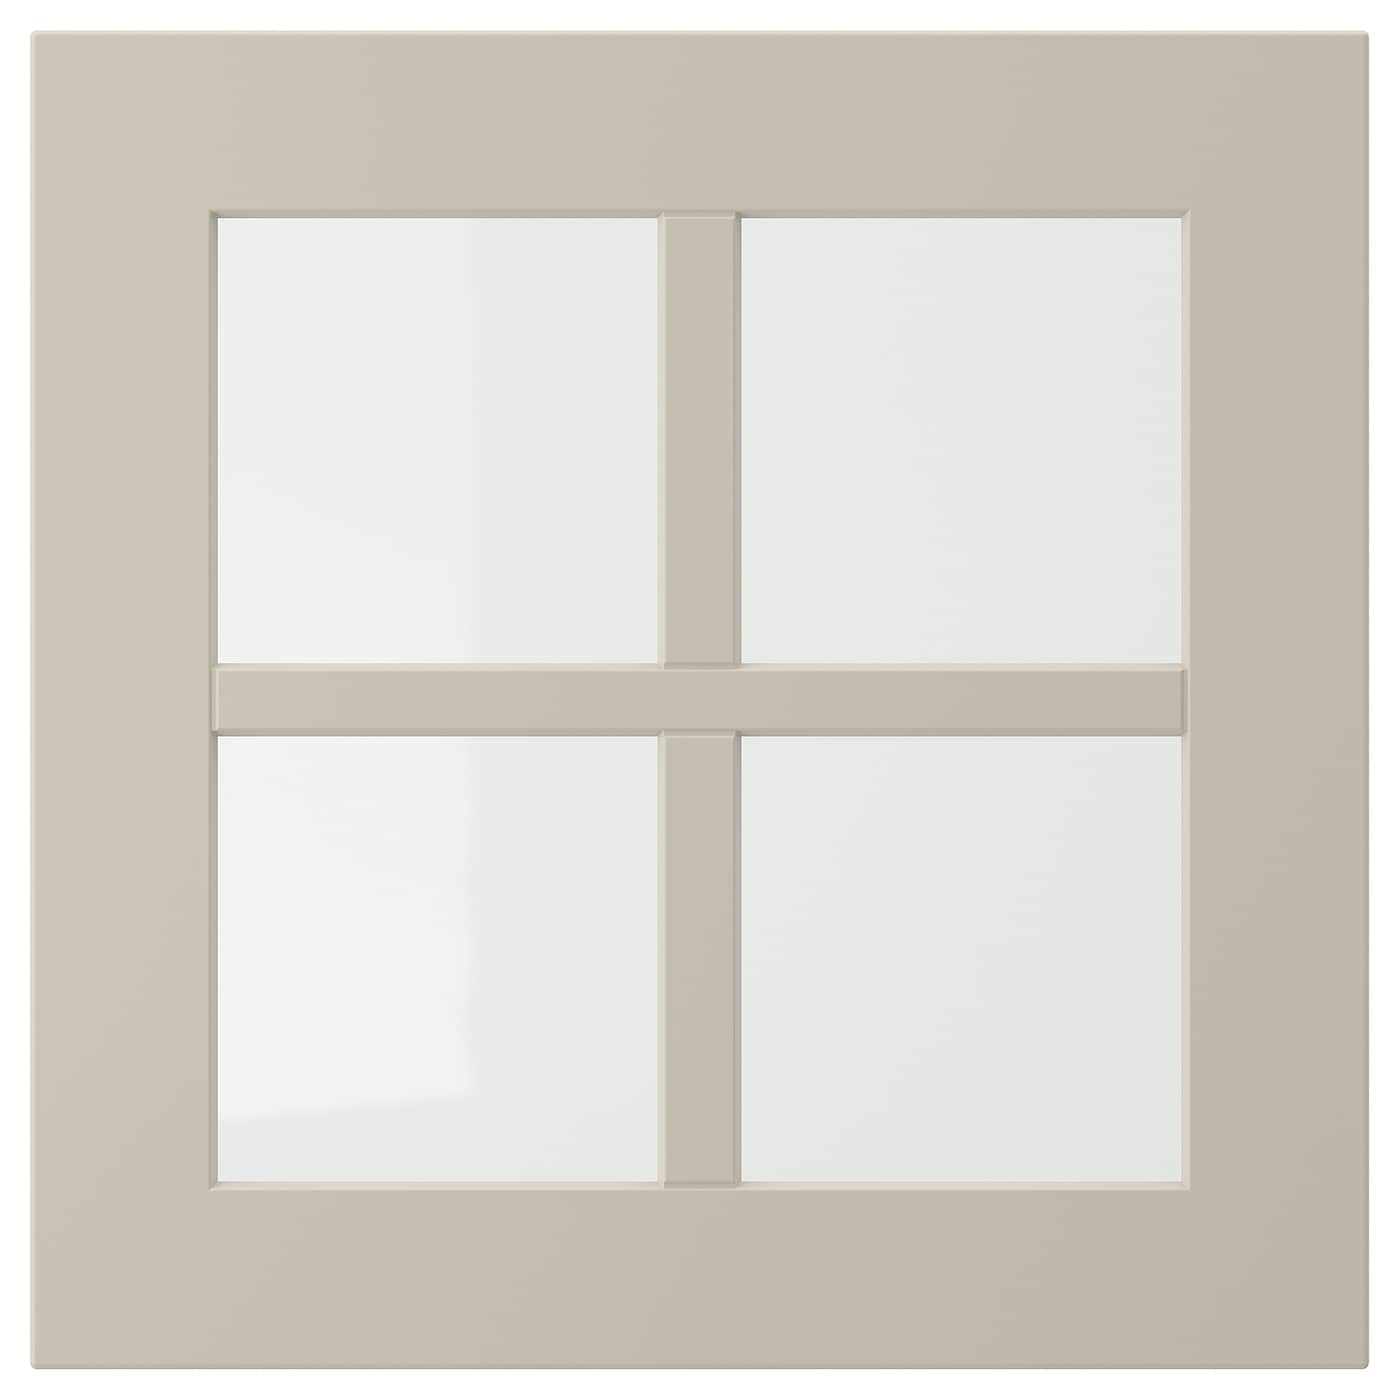 Дверца со стеклом - IKEA STENSUND, 40х40 см, бежевый, СТЕНСУНД ИКЕА